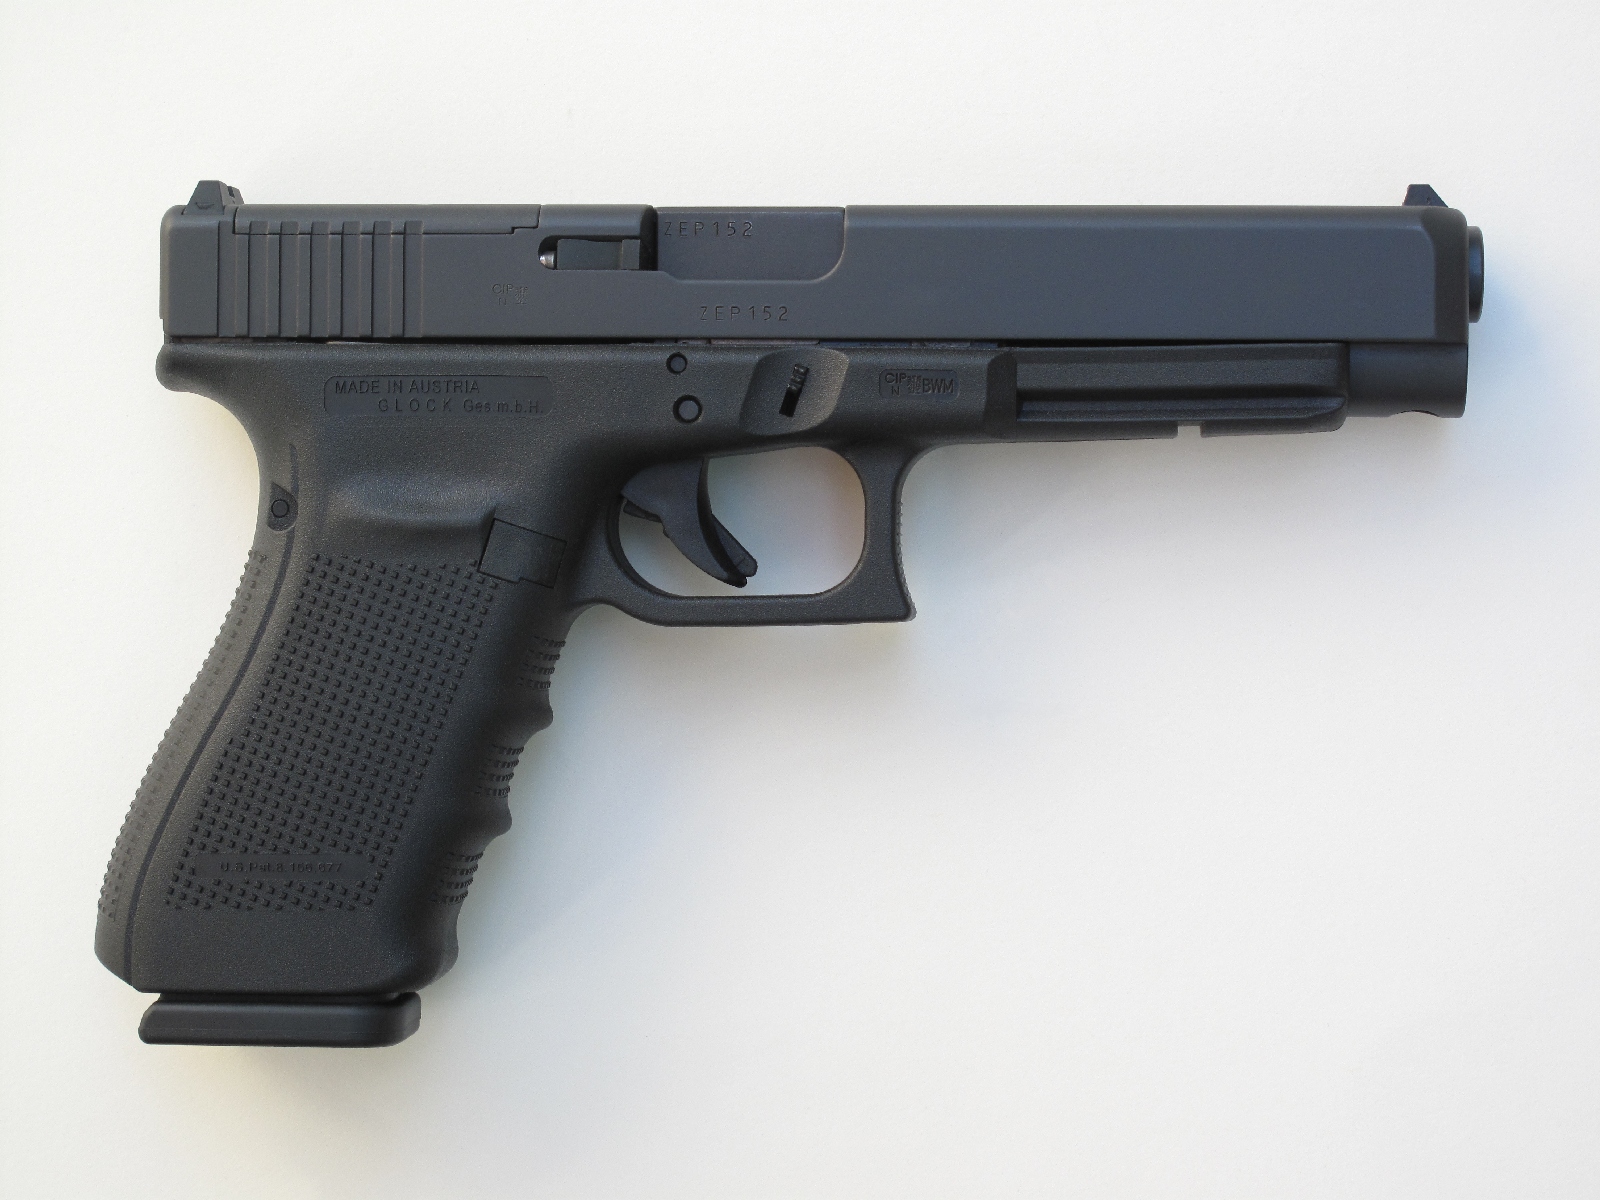 En l’absence de viseur optique, l’arme adopte la silhouette habituelle des pistolets Glock grâce à la plaque de finition qui vient combler le vide laissé par la découpe MOS.